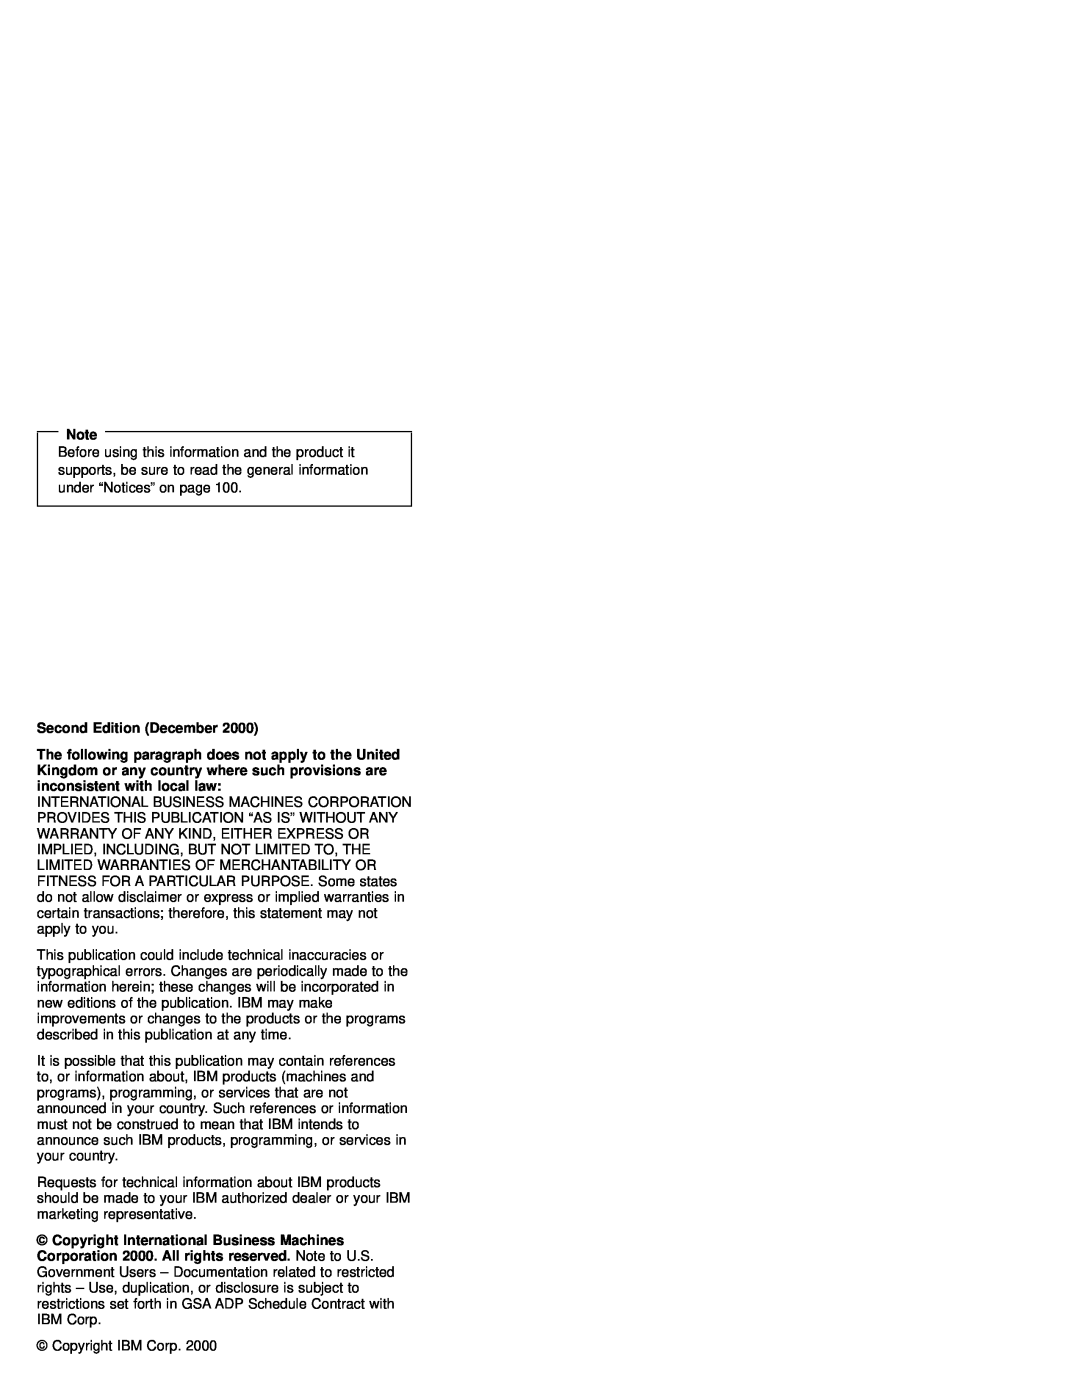 IBM MT 2632 manual Second Edition December 